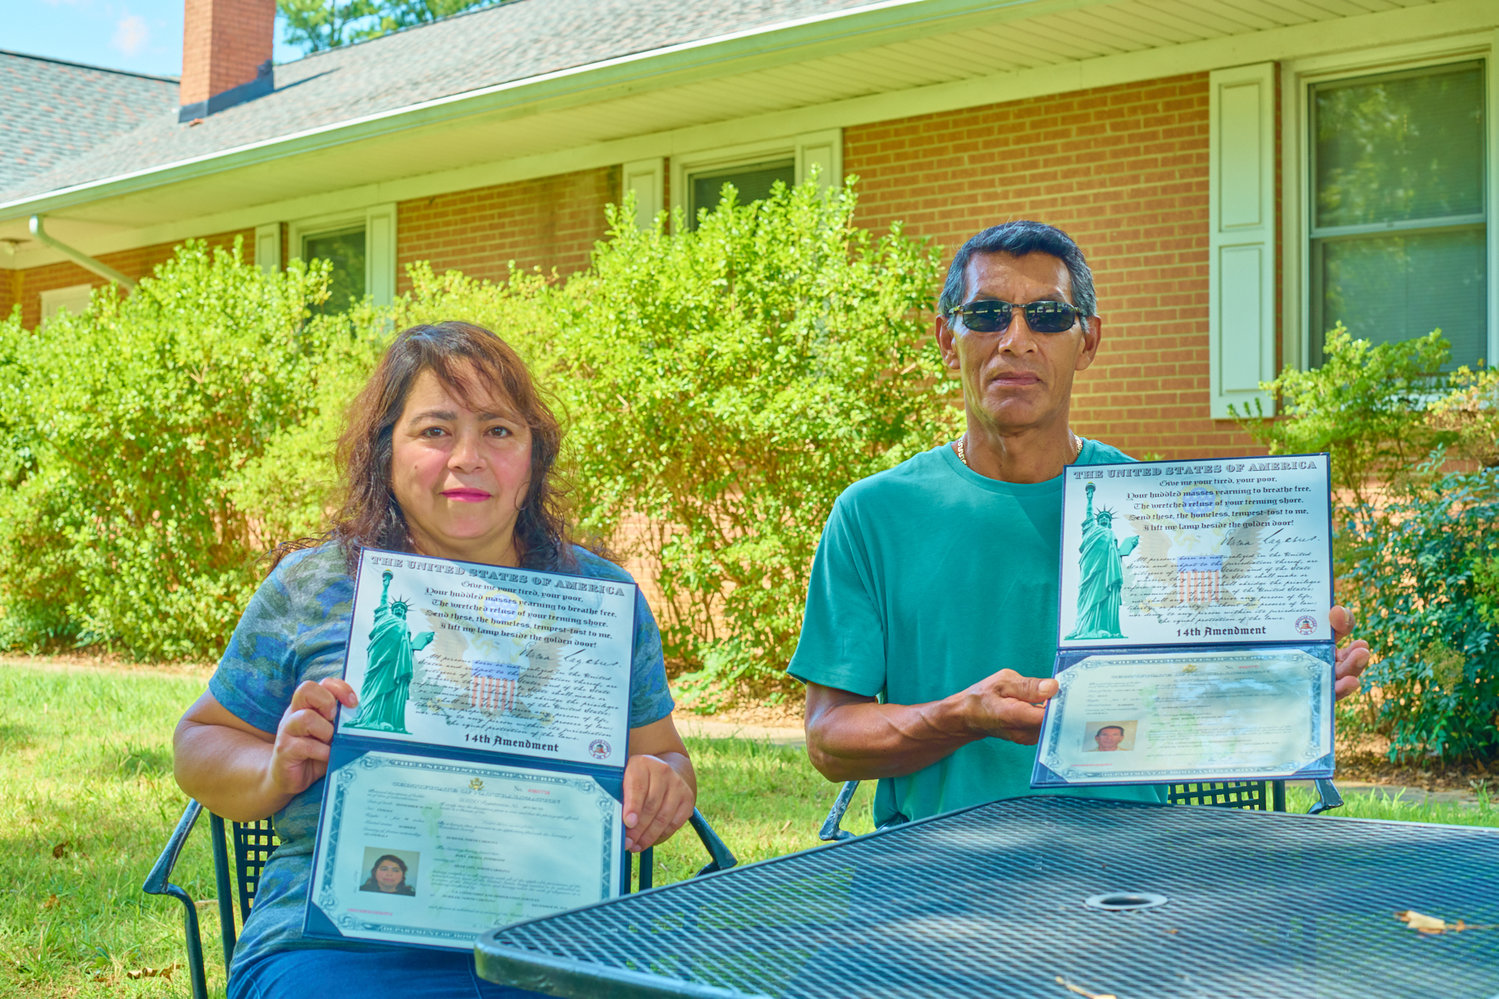 Dora Interiano y su esposo José sostienen sus certificados de ciudadanía estadounidense, que ambos lograron el diciembre pasado con la ayuda de Chatham Literacy.